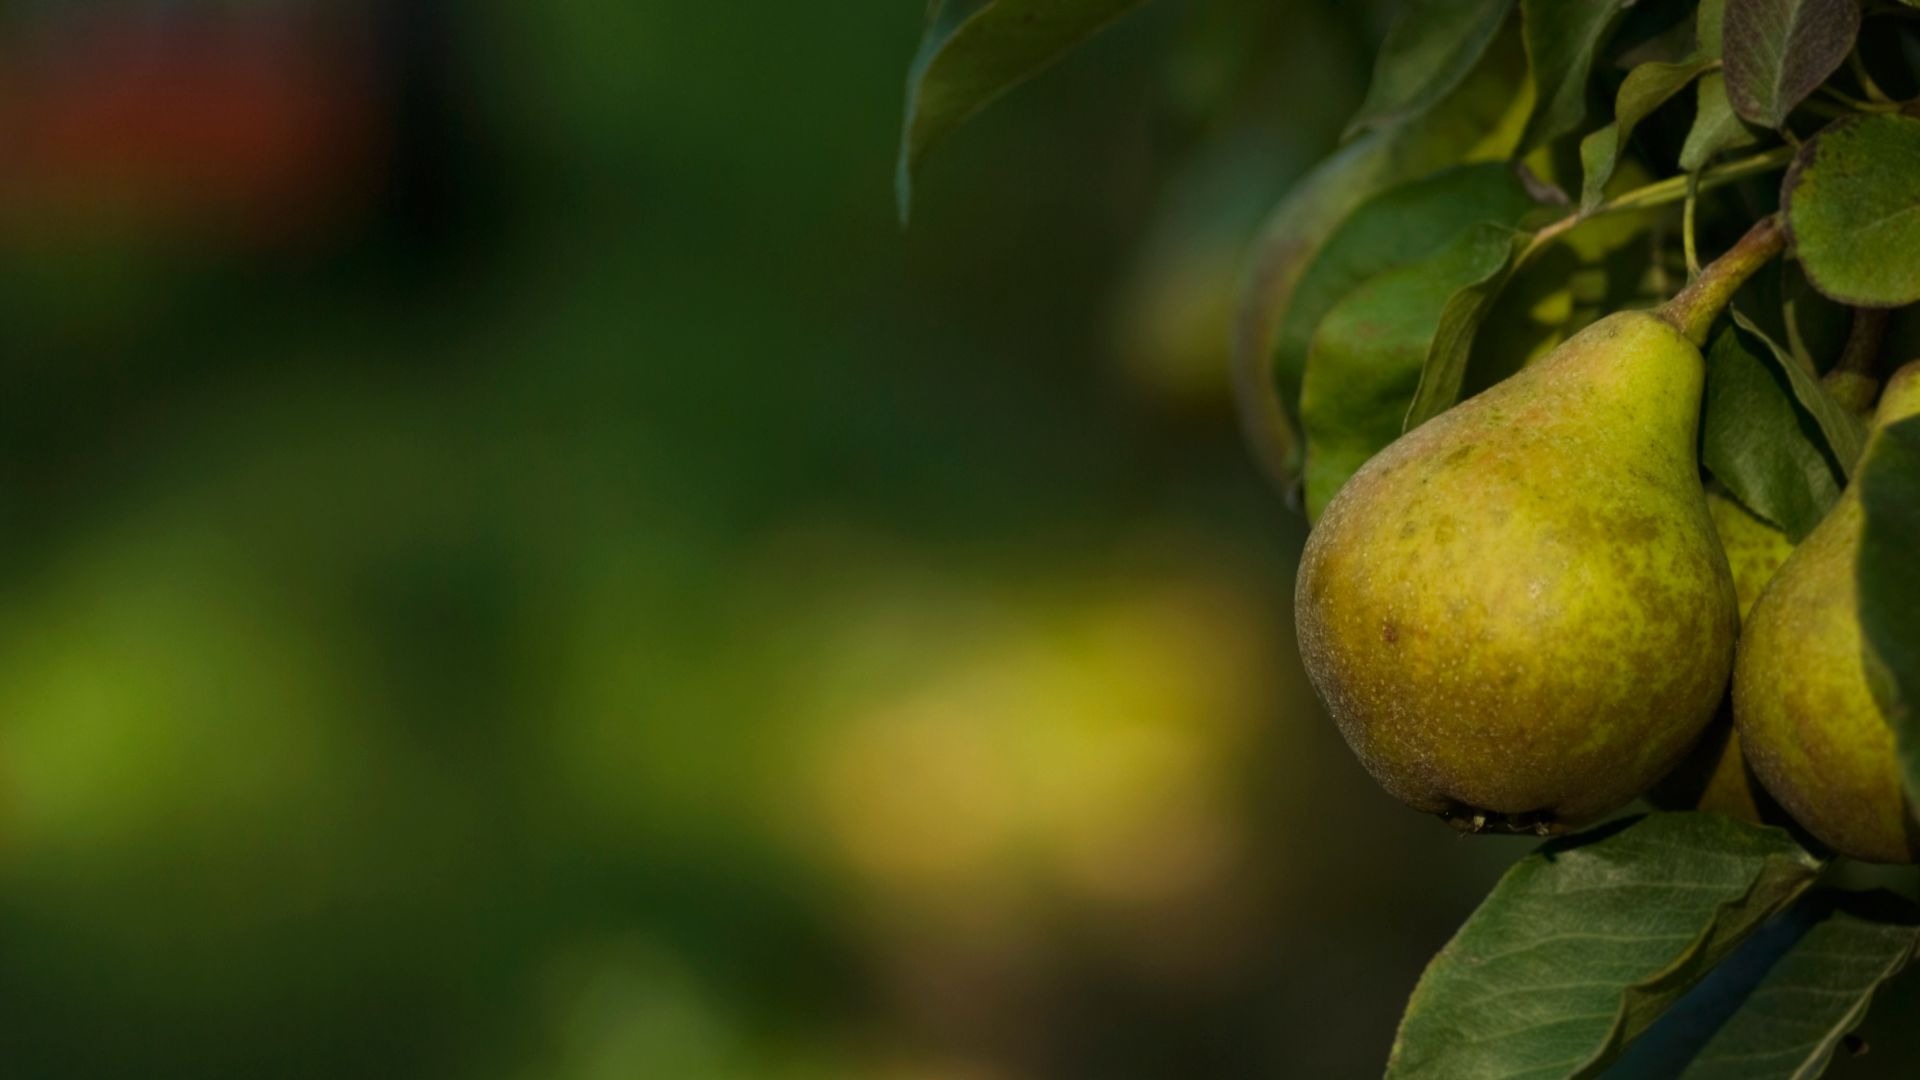 Will a single pear tree produce fruit